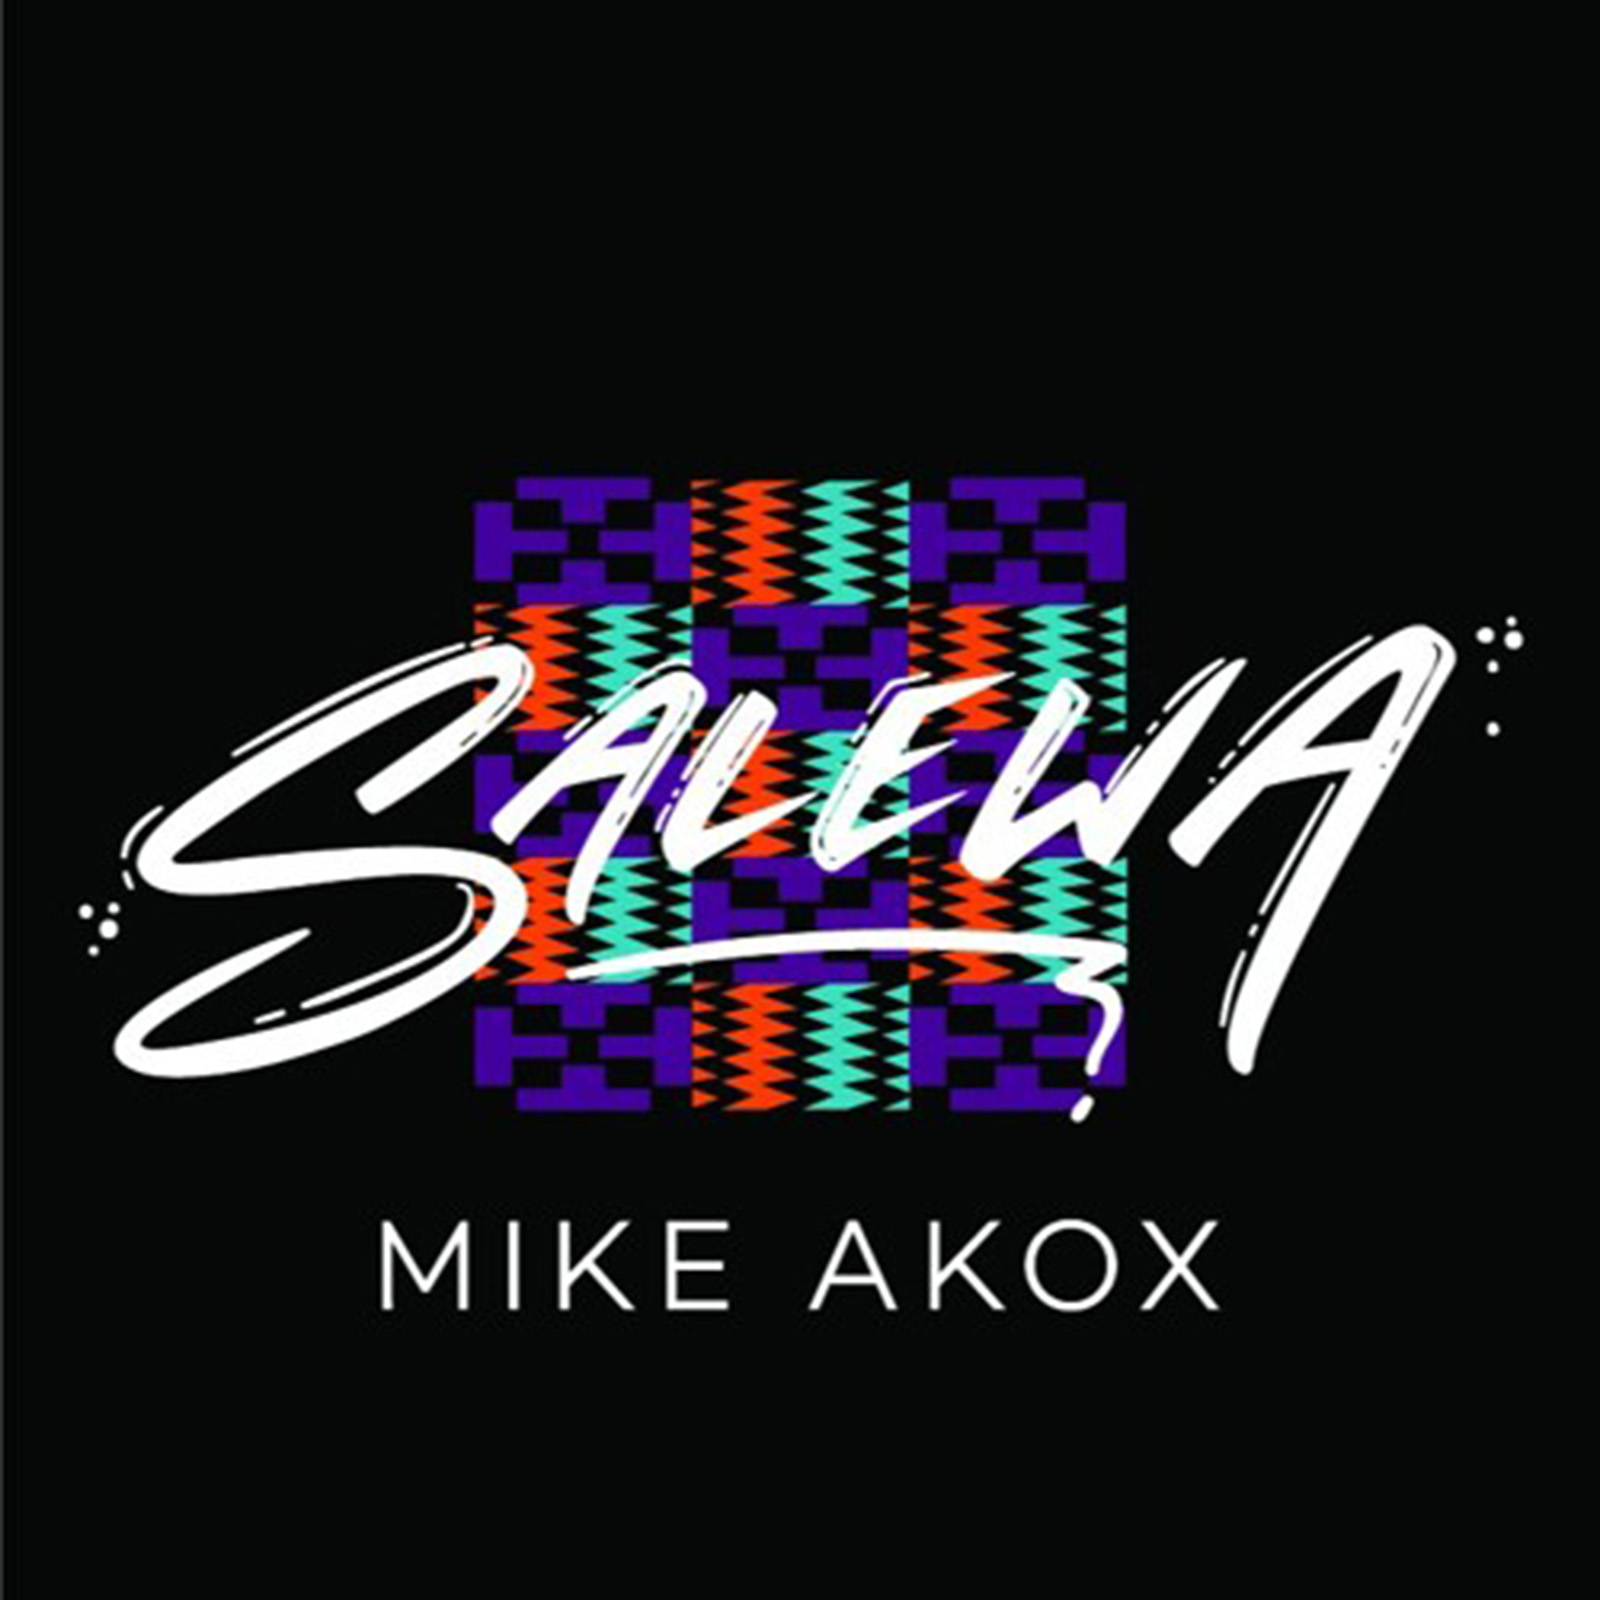 Salewa by Mike Akox